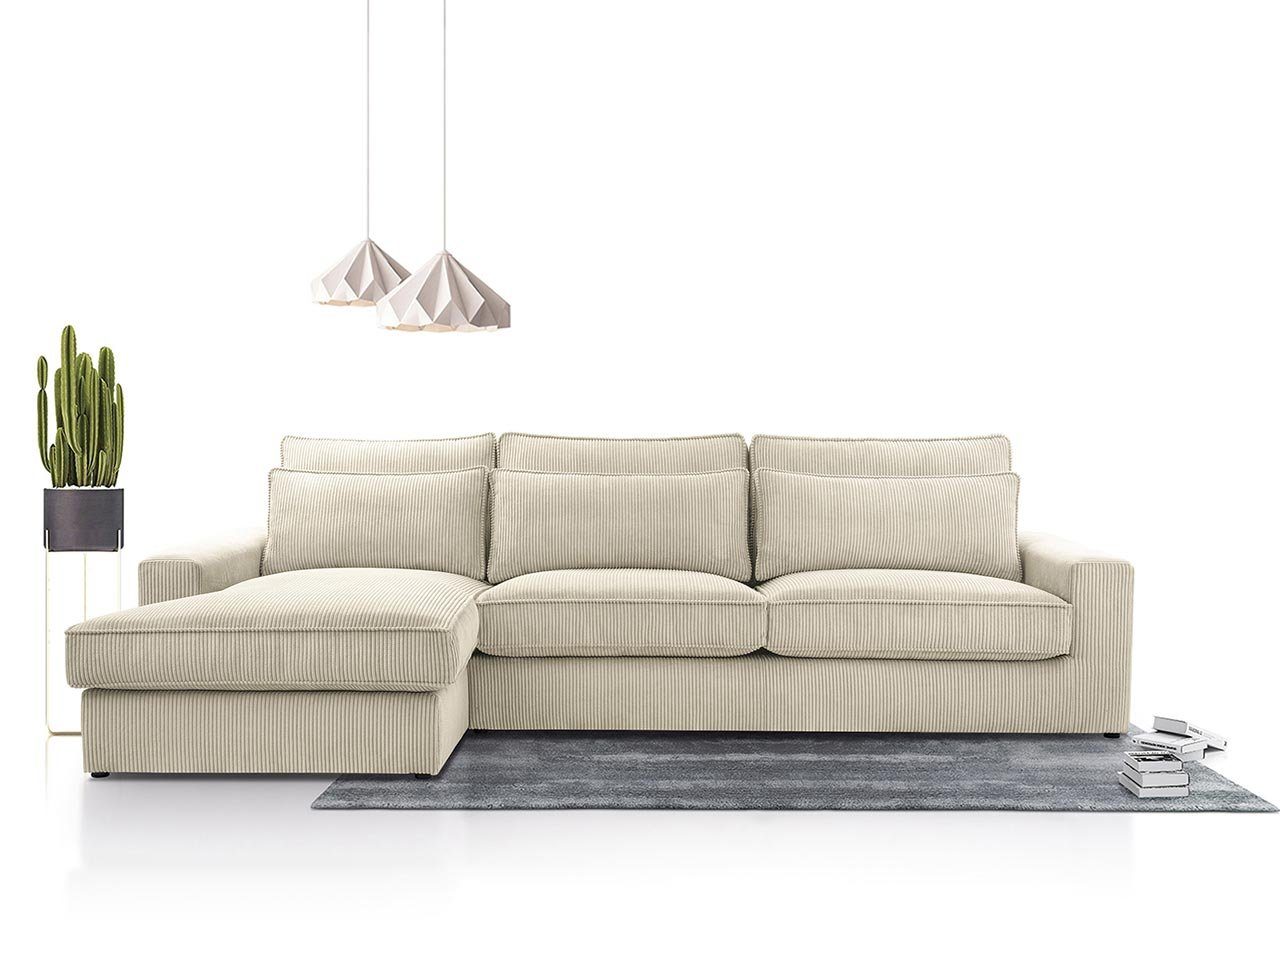 MKS MÖBEL Ecksofa CANES, L - Form Couch, mit lose Kissen, modern Ecksofa Beige Lincoln